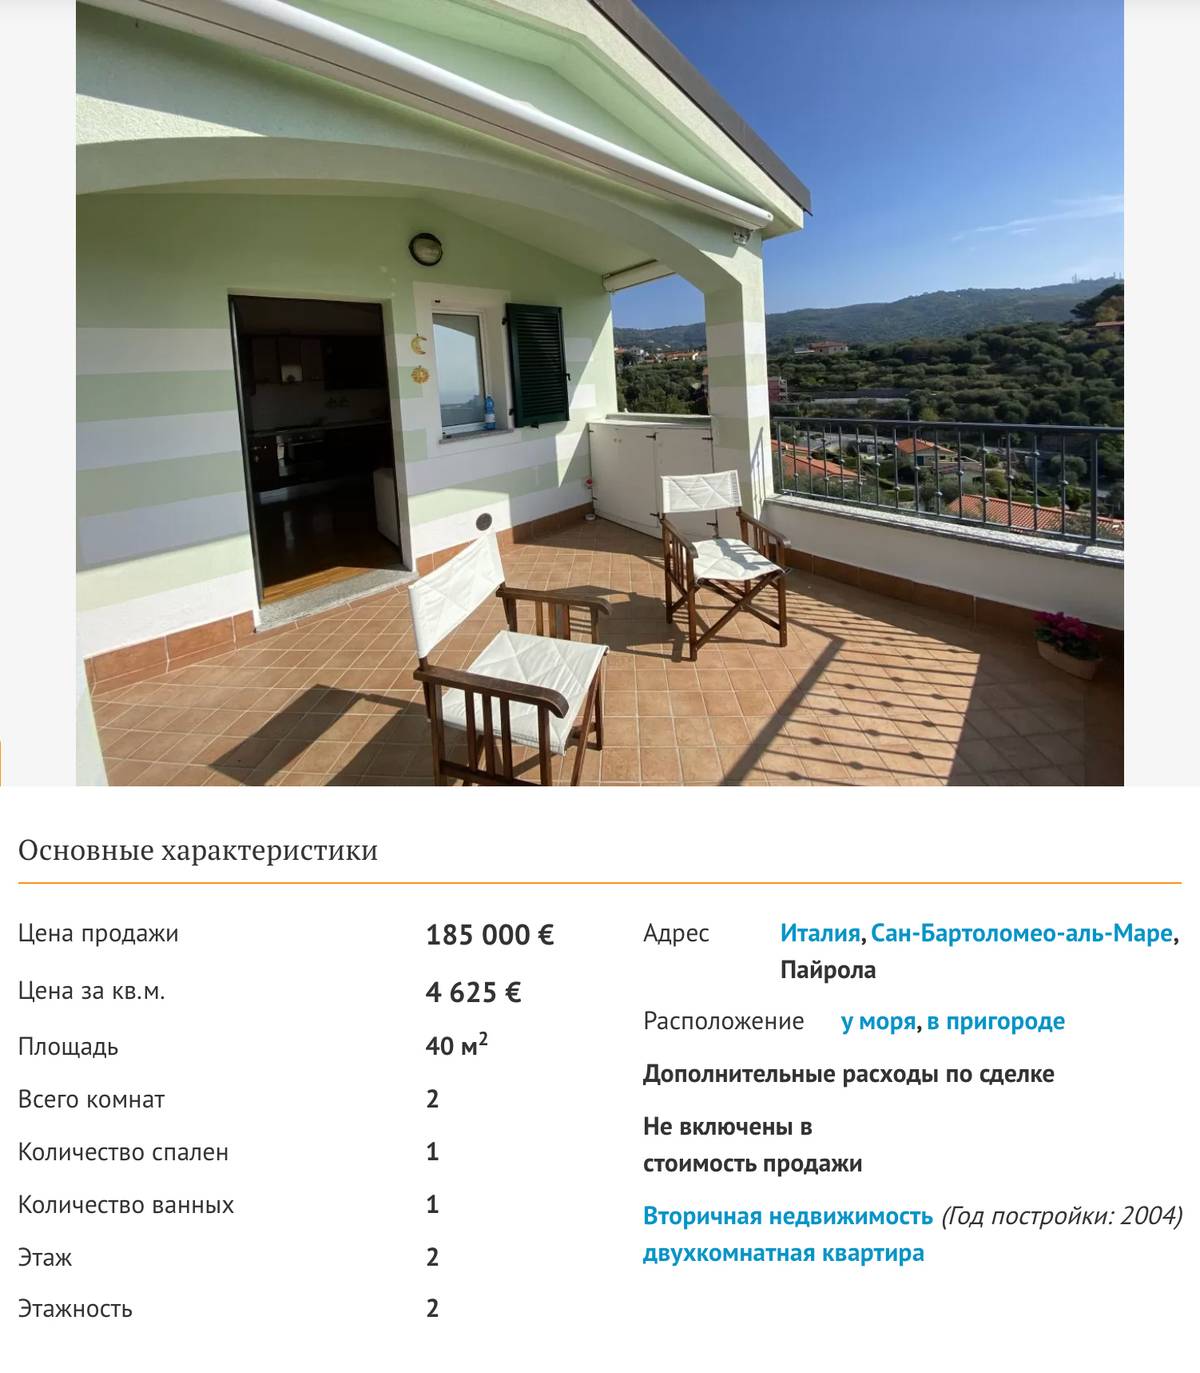 В Италии даже маленькая квартира в двух километрах от моря стоит очень дорого. Источник: prian.ru